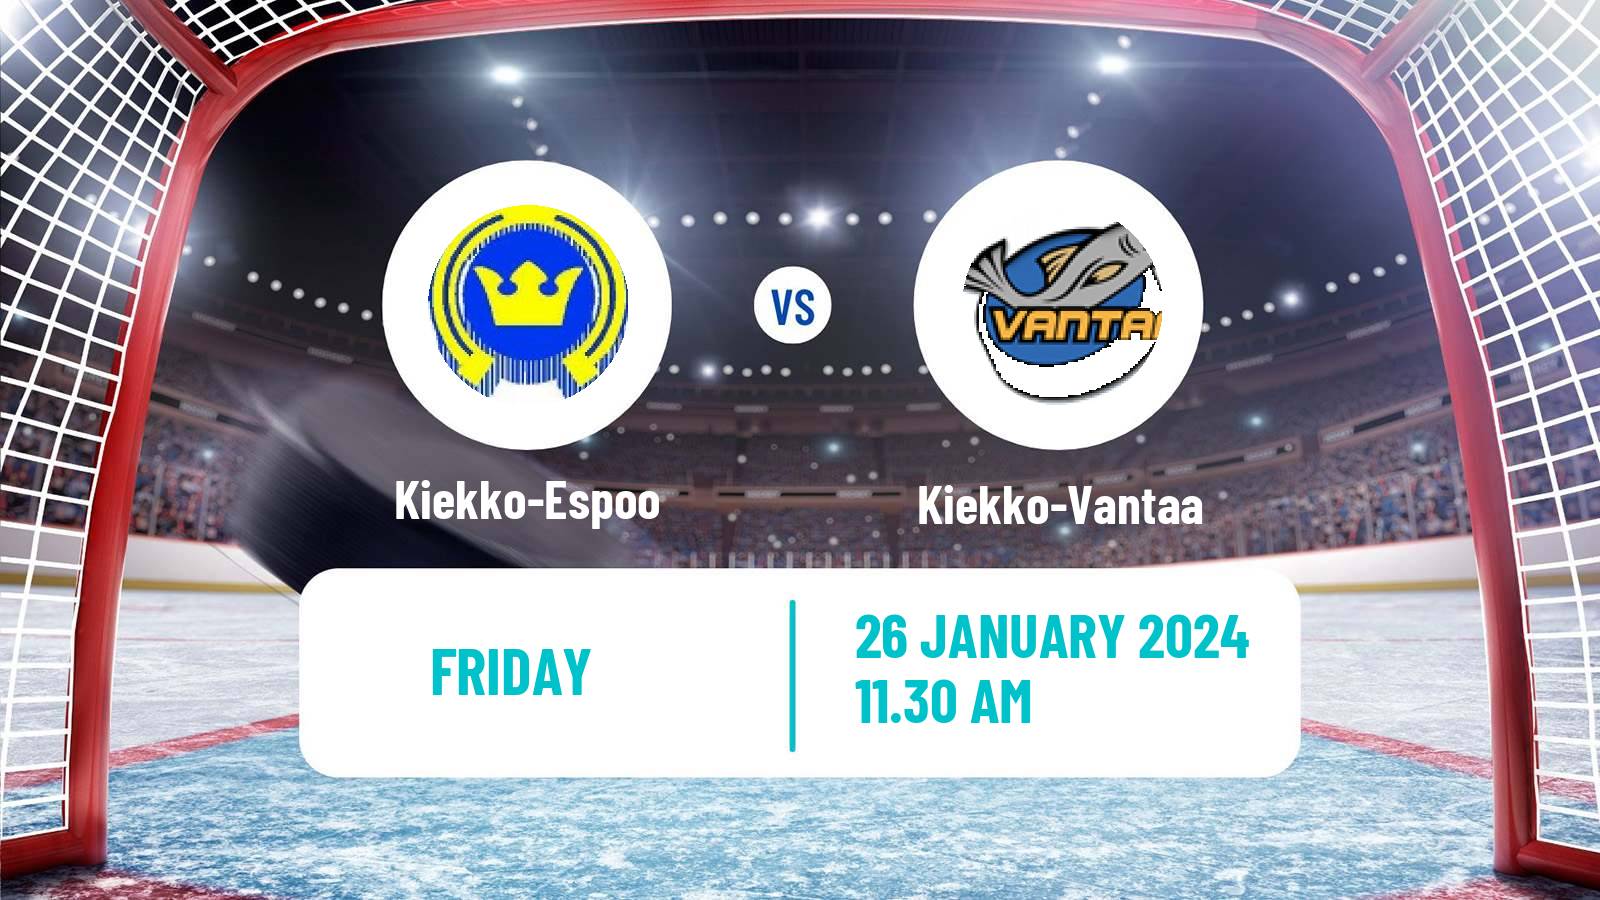 Hockey Finnish Mestis Kiekko-Espoo - Kiekko-Vantaa